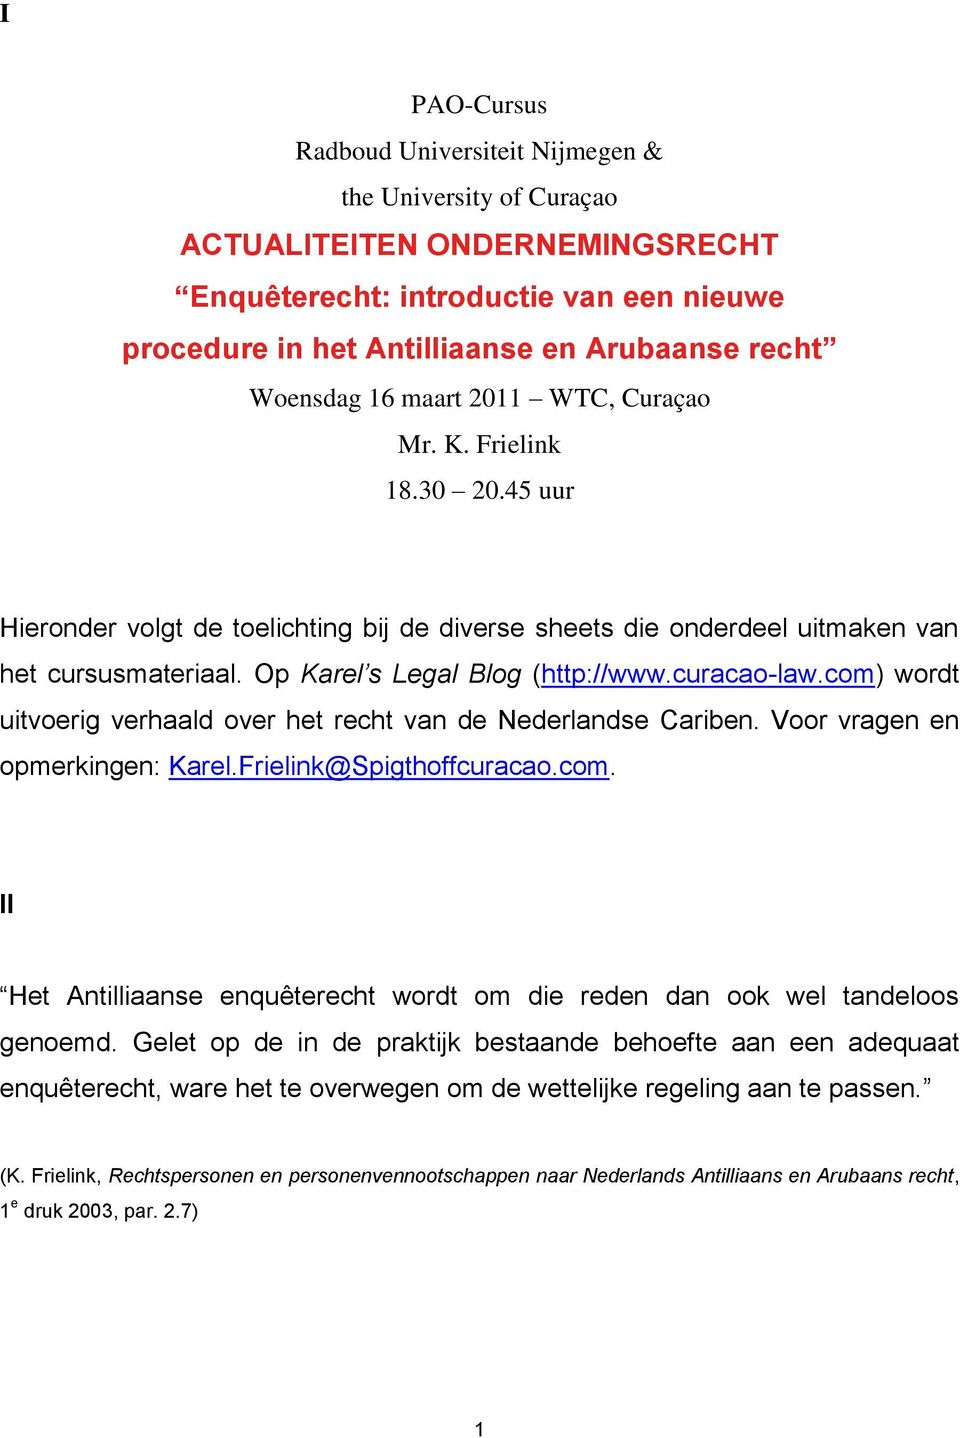 Op Karel s Legal Blog (http://www.curacao-law.com) wordt uitvoerig verhaald over het recht van de Nederlandse Cariben. Voor vragen en opmerkingen: Karel.Frielink@Spigthoffcuracao.com. II Het Antilliaanse enquêterecht wordt om die reden dan ook wel tandeloos genoemd.